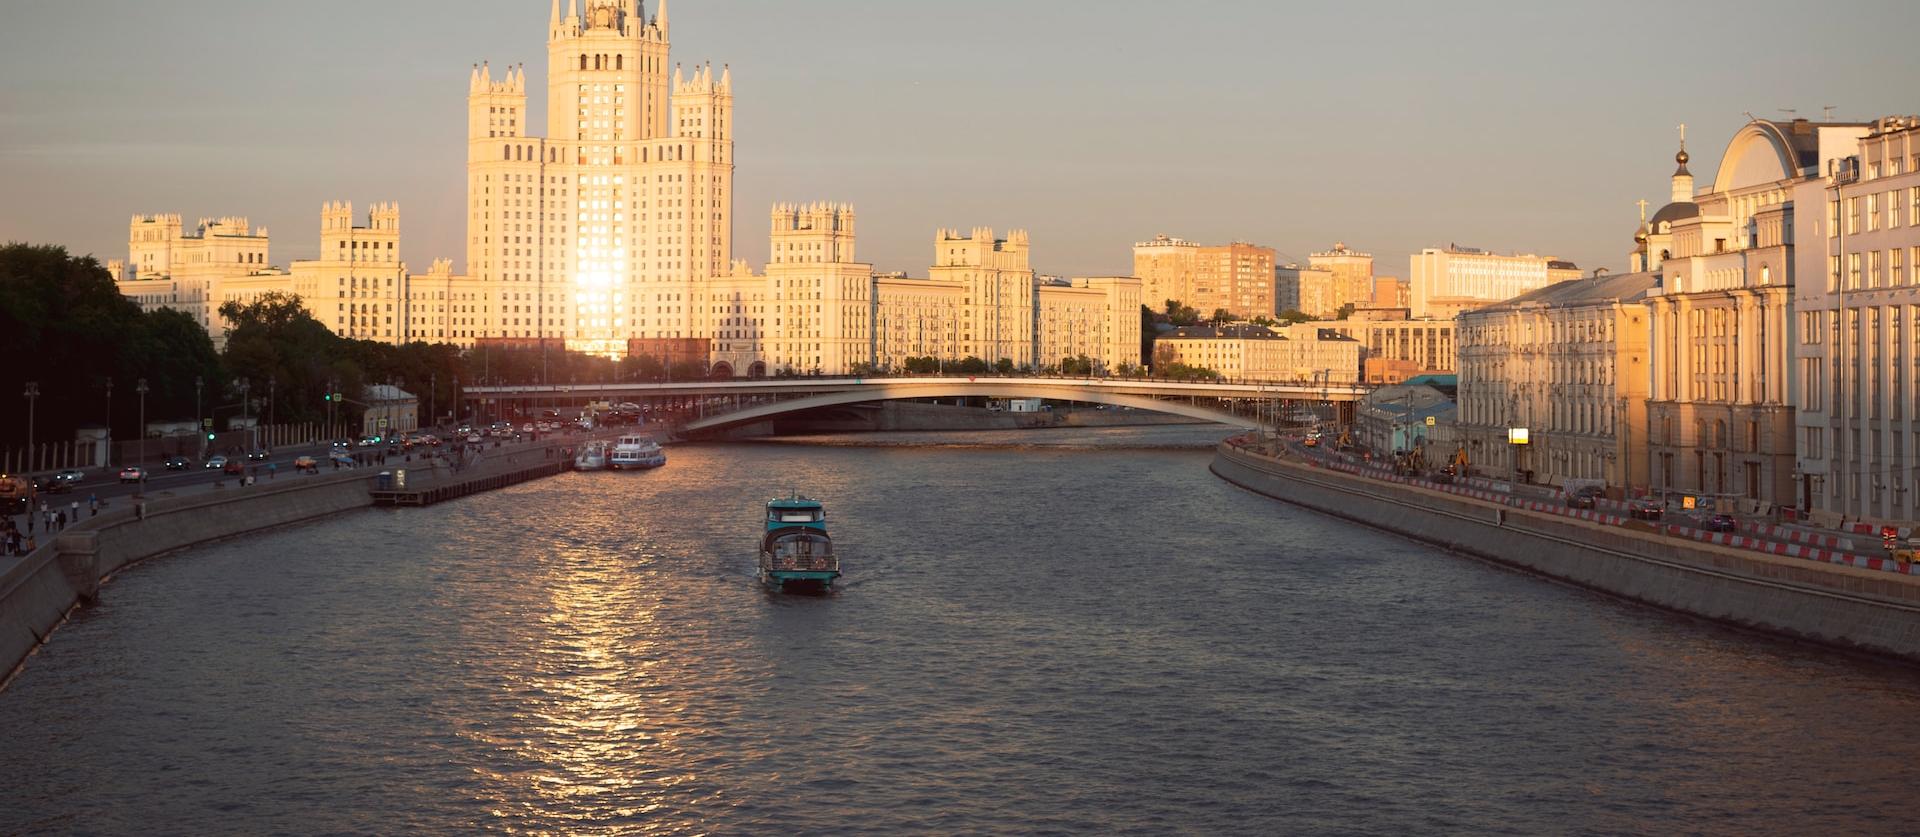 Круиз «Любимая столица» от причала «Киевский вокзал» до Кремля со скидкой 50%